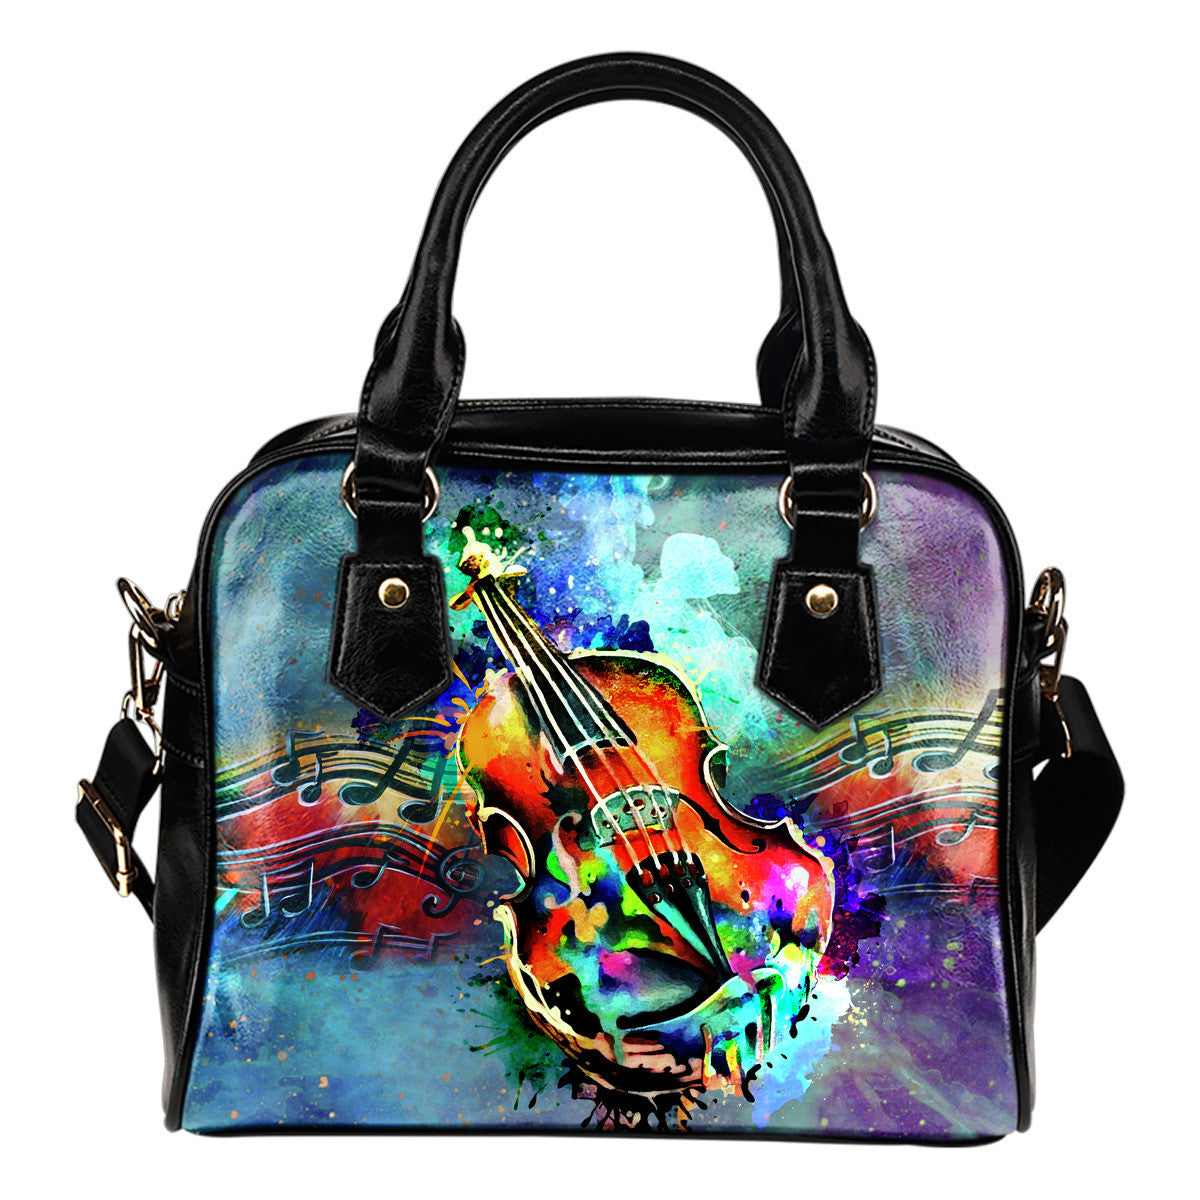 Artistic Violin Handbag